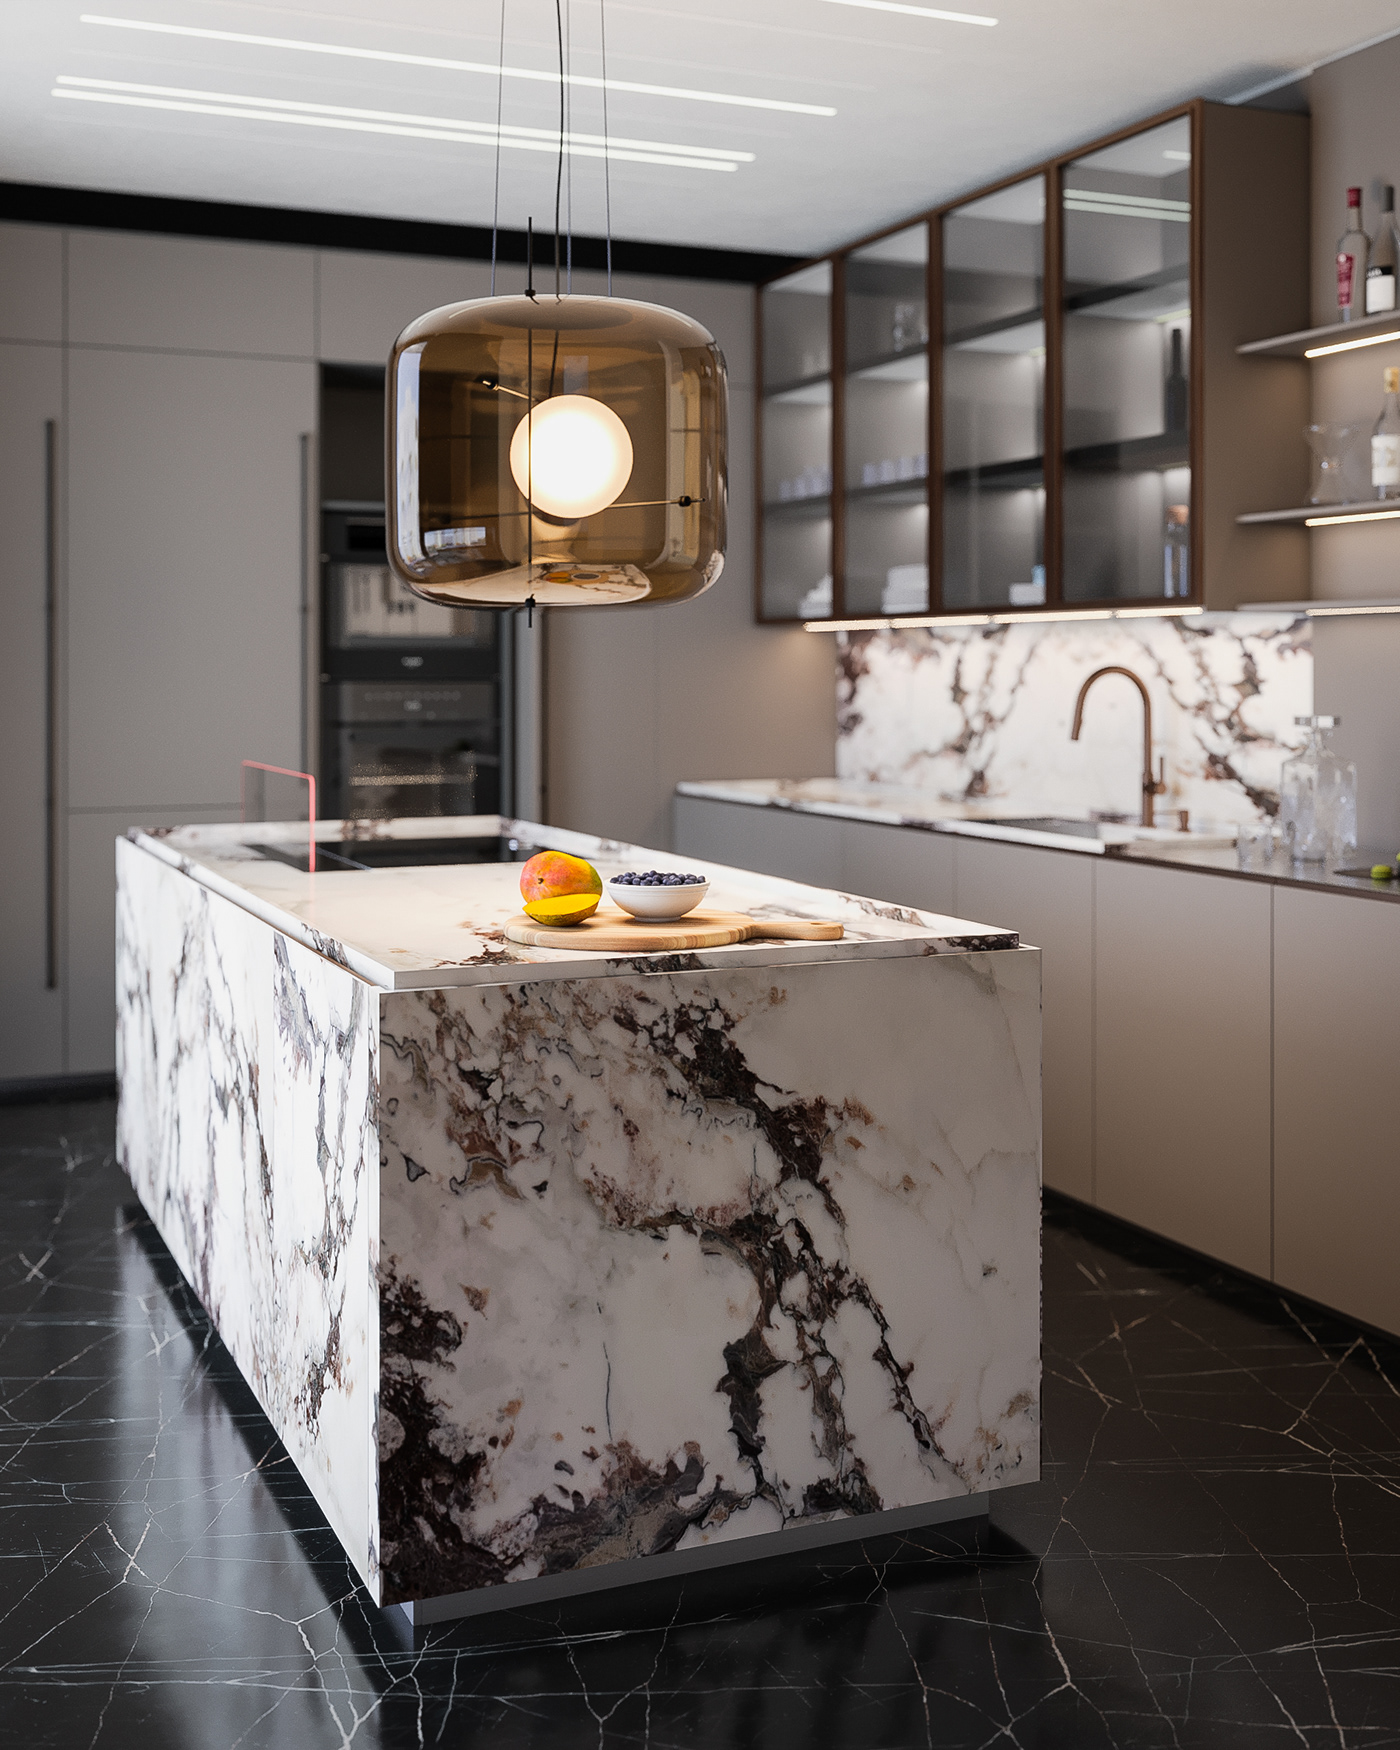 3ds max corona render  interior design  kitchen design luxury luxurydesign visualization